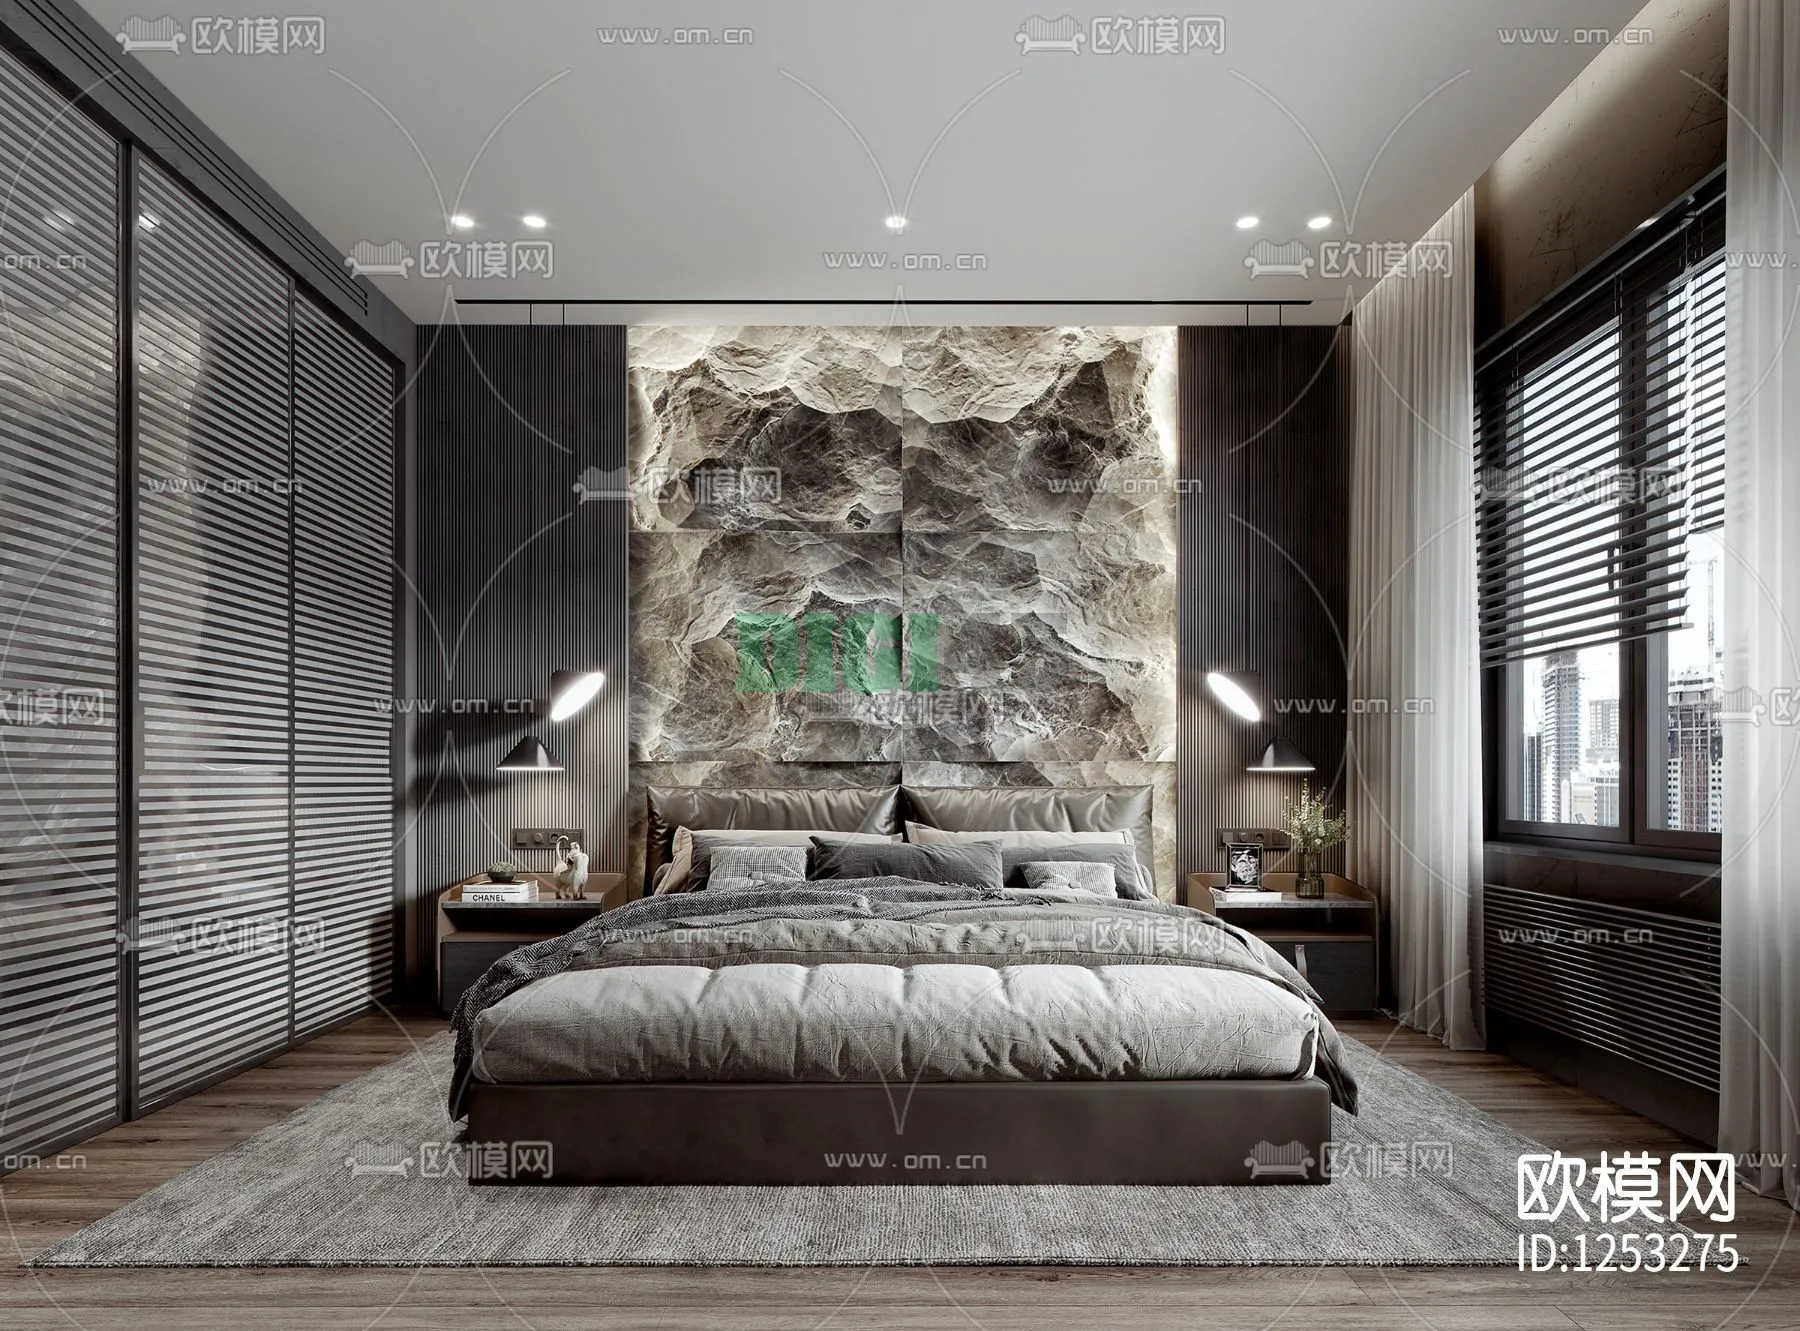 Bedroom 3D Scenes – 1125